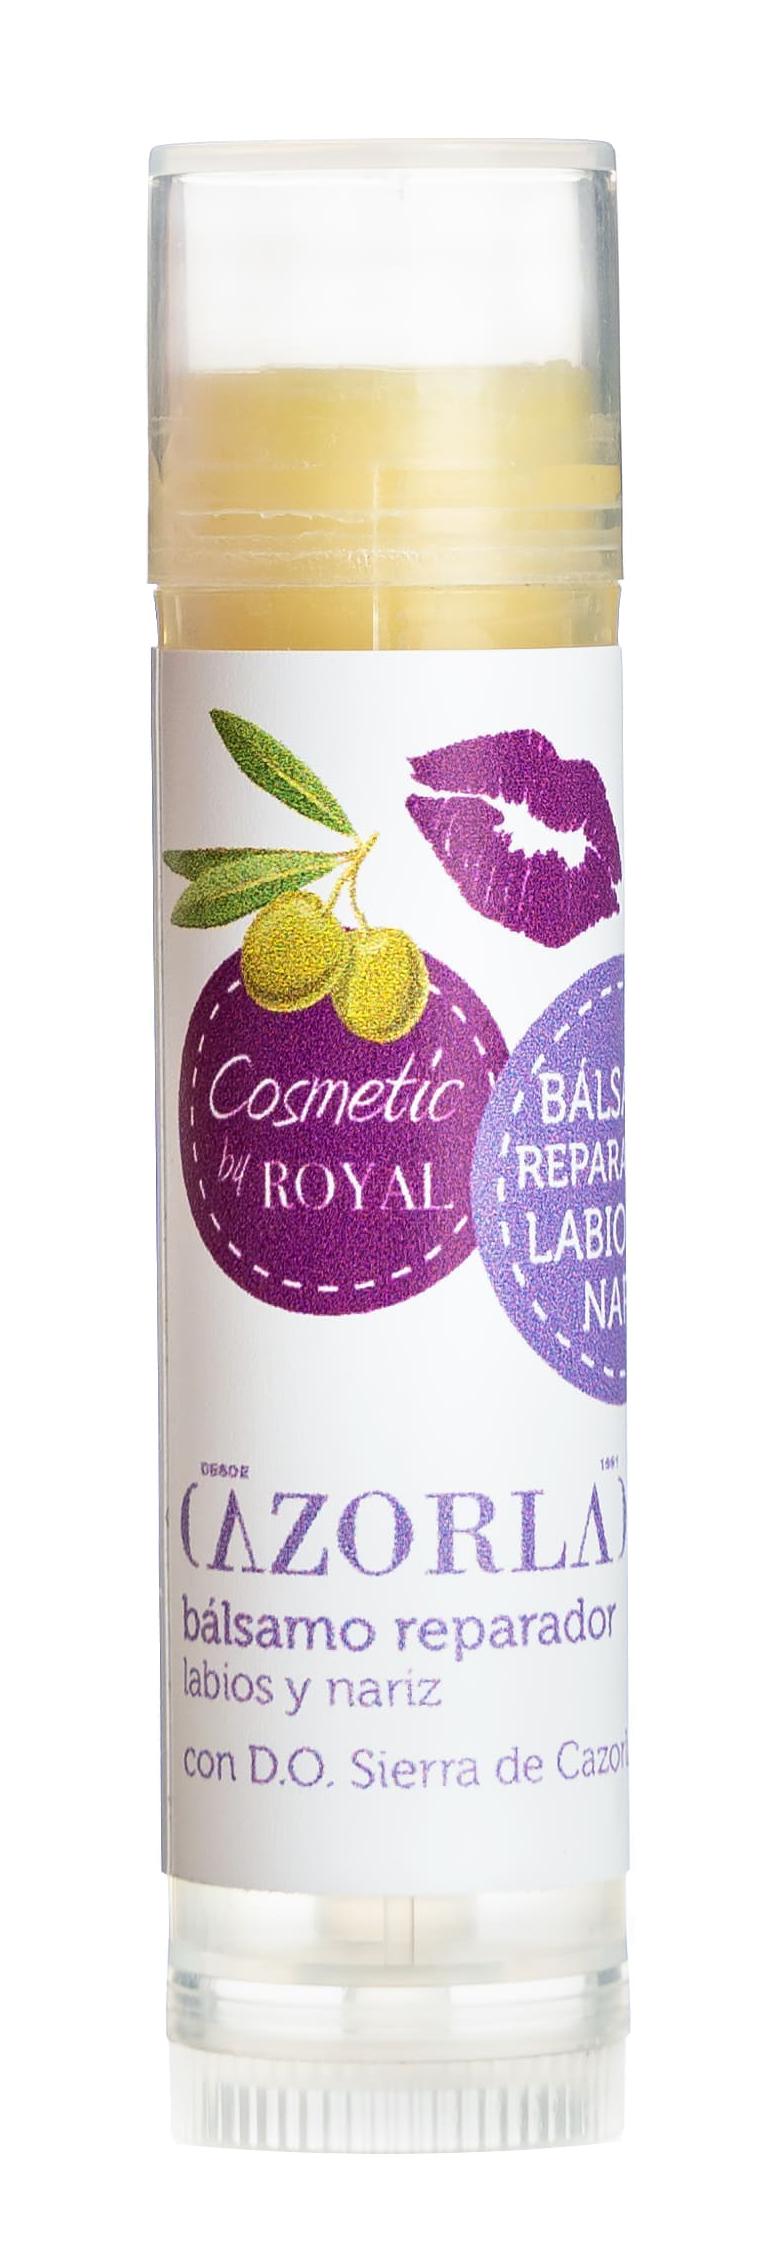 картинка Бальзам для губ с оливковым маслом Казорла Роял 4 г стик от магазина Winner